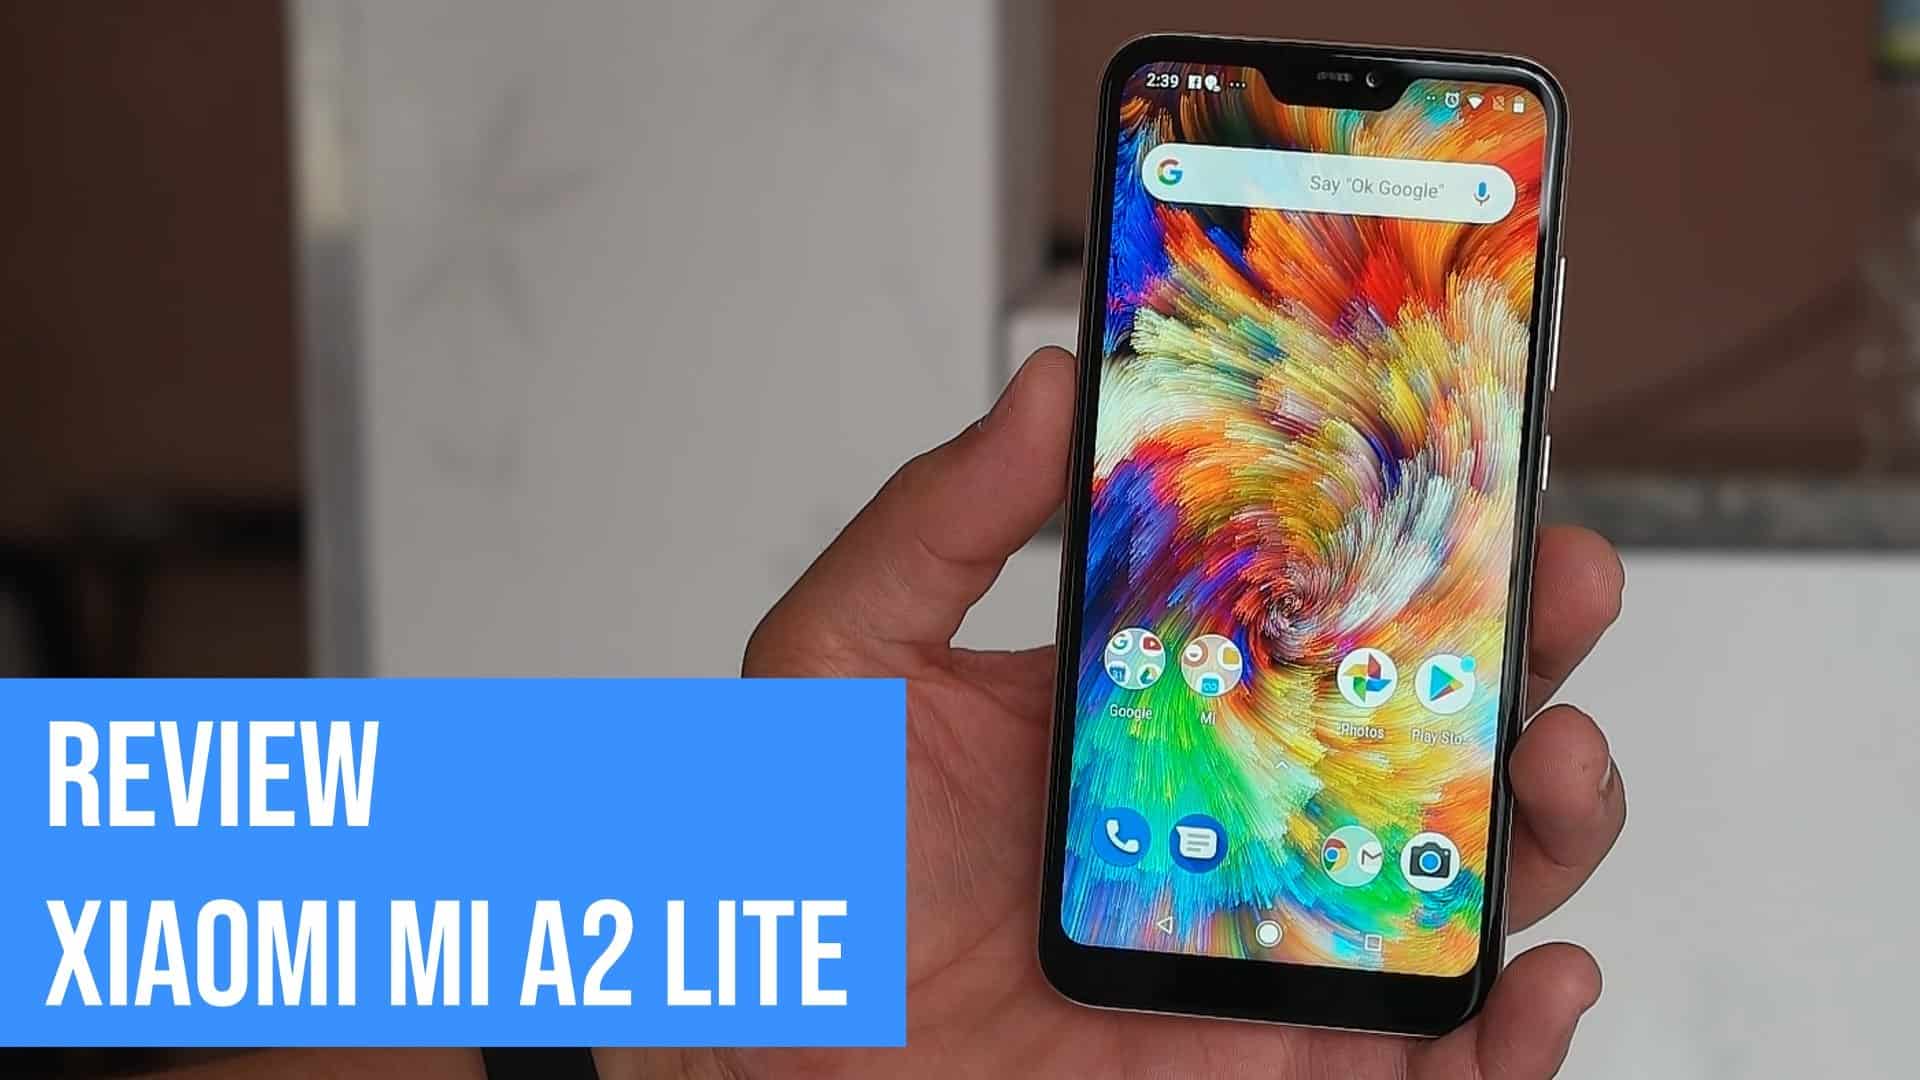 Review Xiaomi Mi A2 lite, o Android One baratinho 6